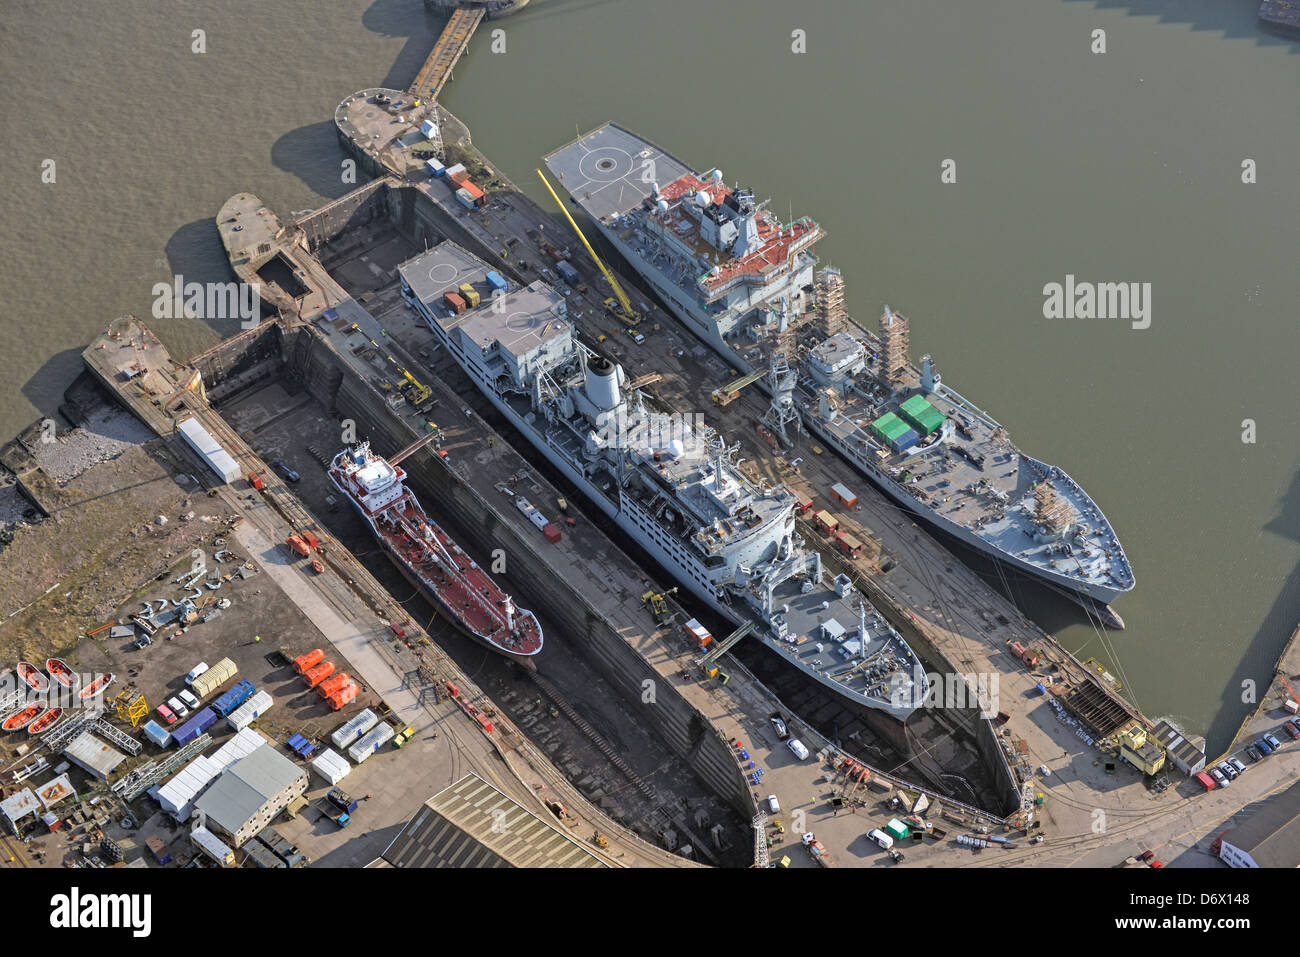 Photographie aérienne des navires en cale sèche pour des réparations à Birkenhead Merseyside. Chantier Naval Cammell Laird Banque D'Images